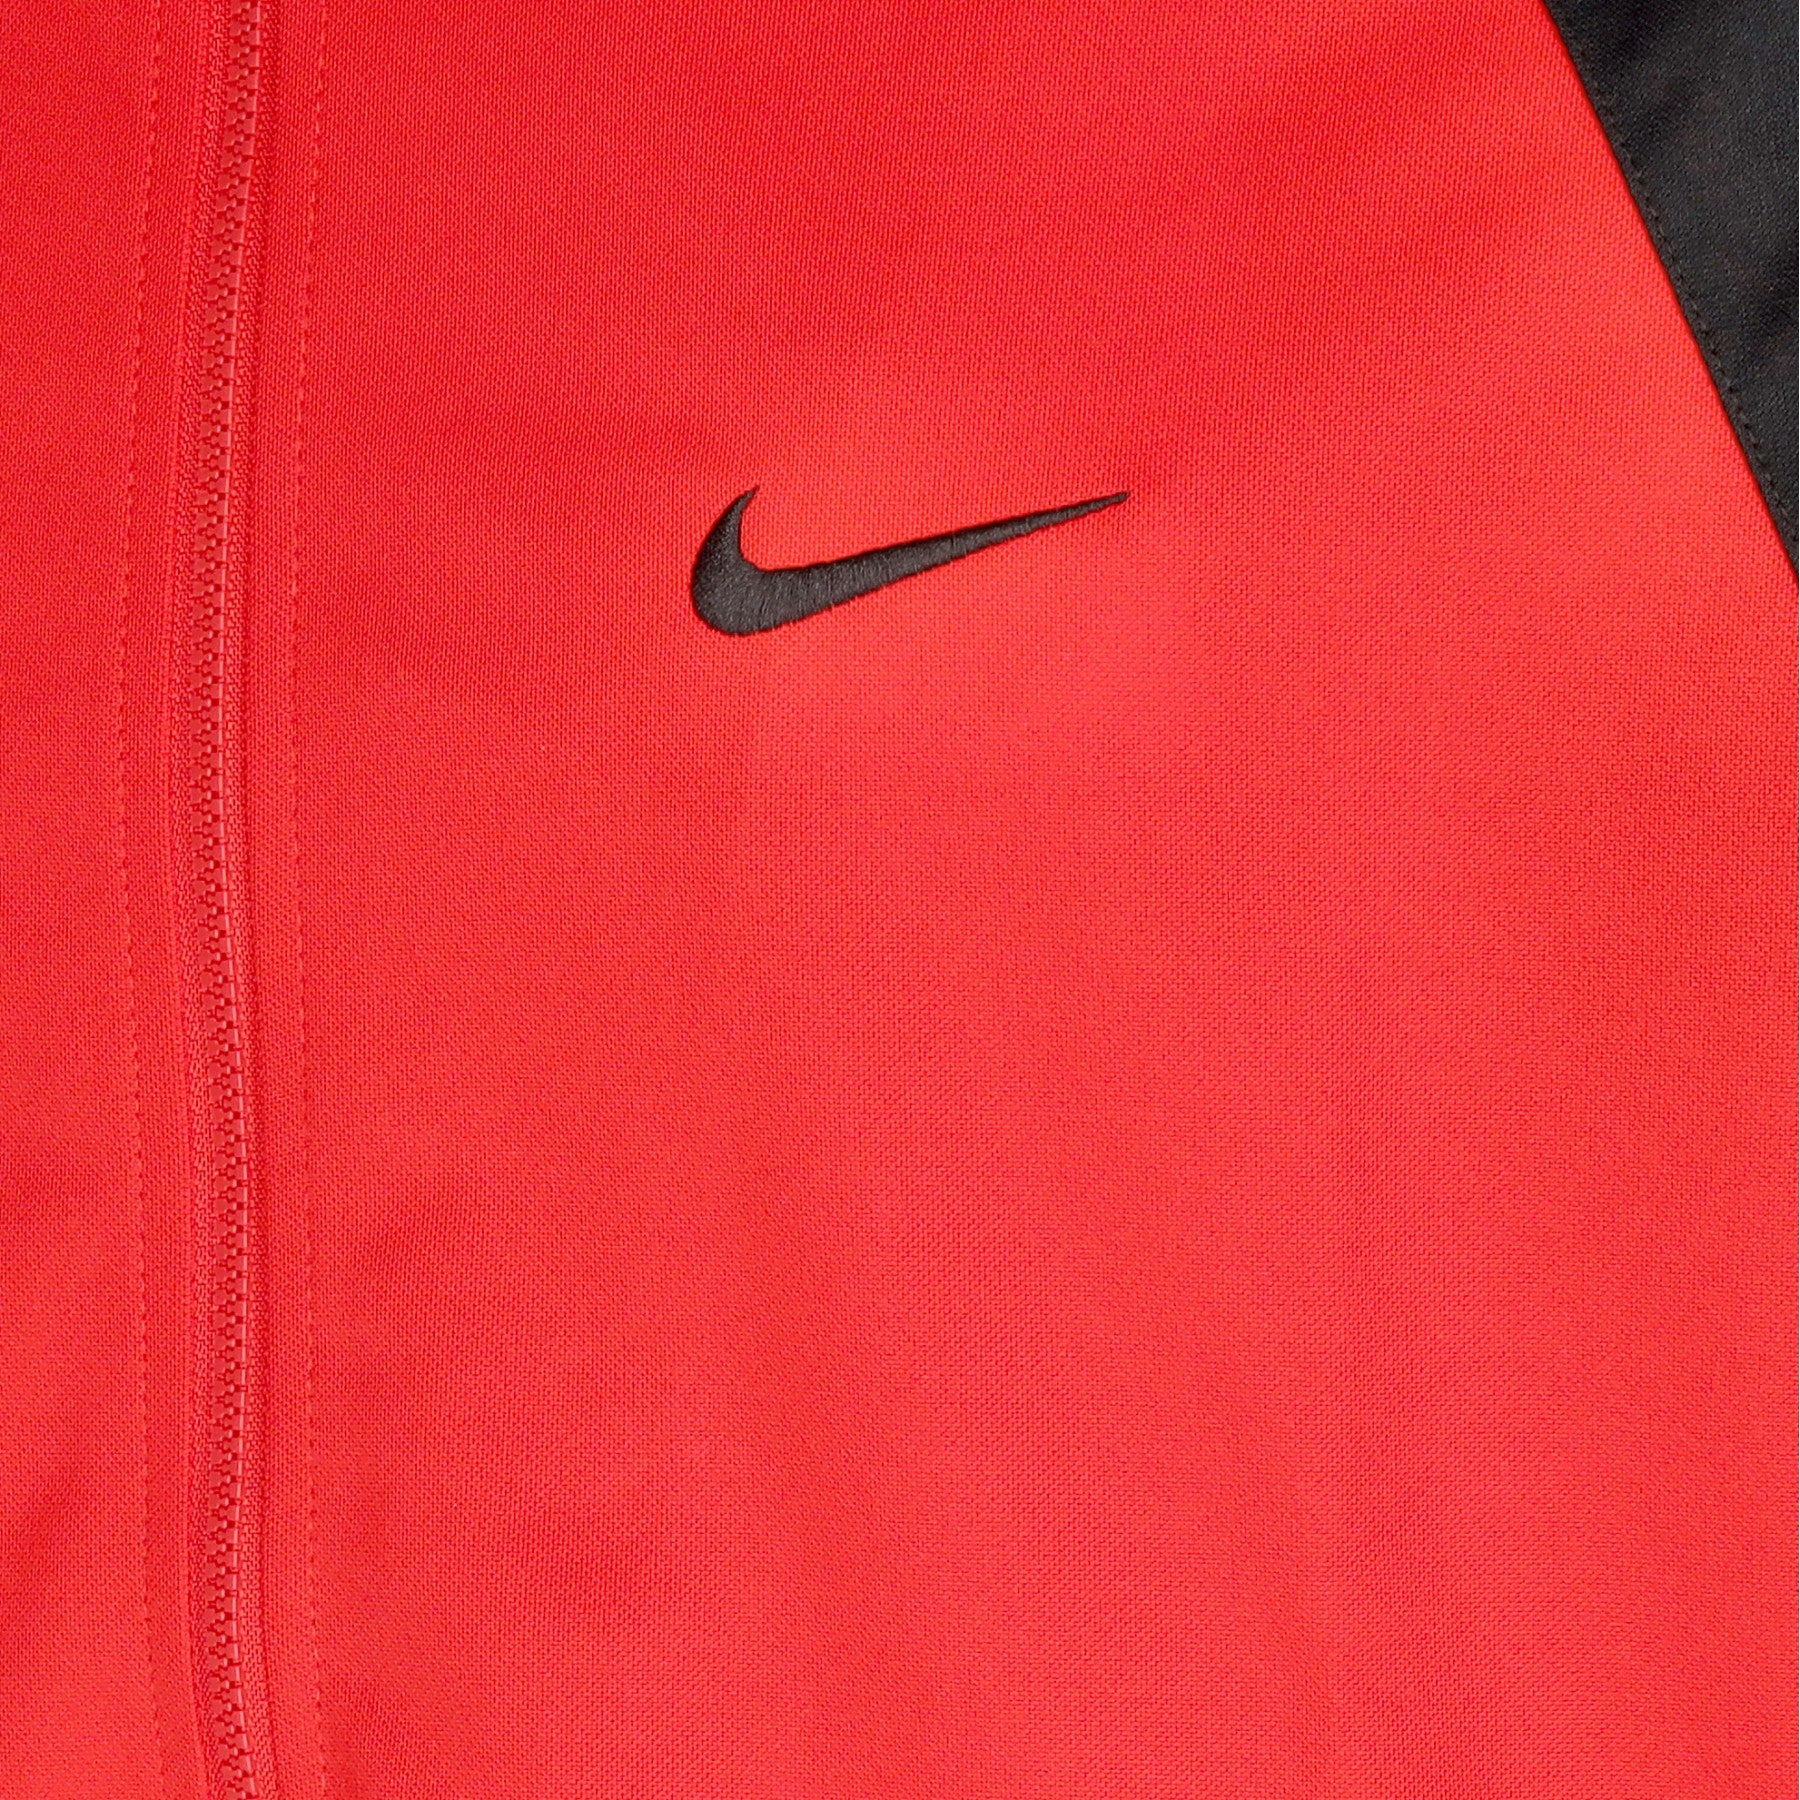 Nike, Giacca Tuta Uomo Starting Five Dri-fit Jacket, 